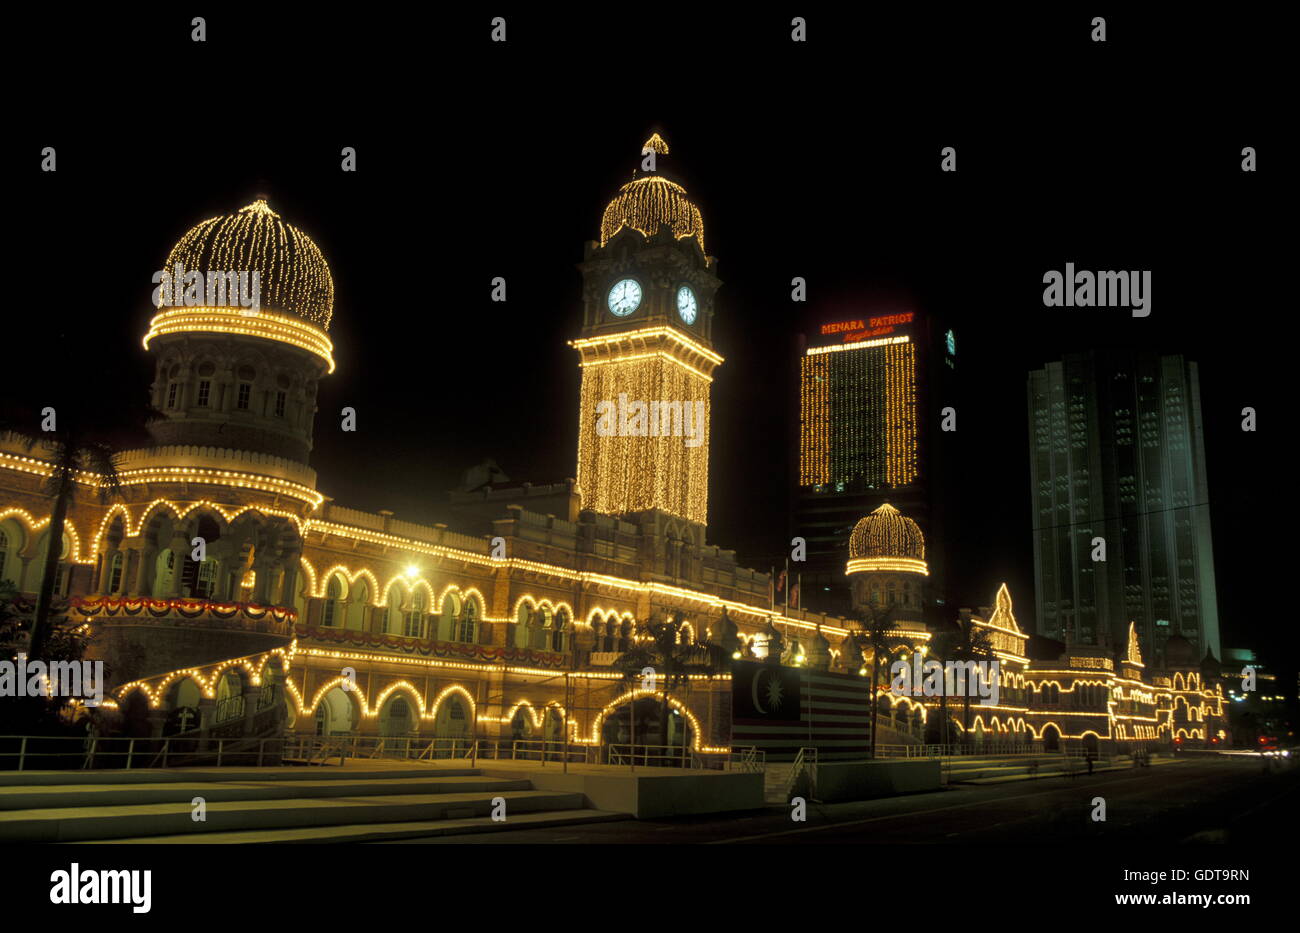 Il sultano Abdul Samad Palace presso il Merdeka Square nella città di Kuala Lumpur in Malesia in southeastasia. Foto Stock